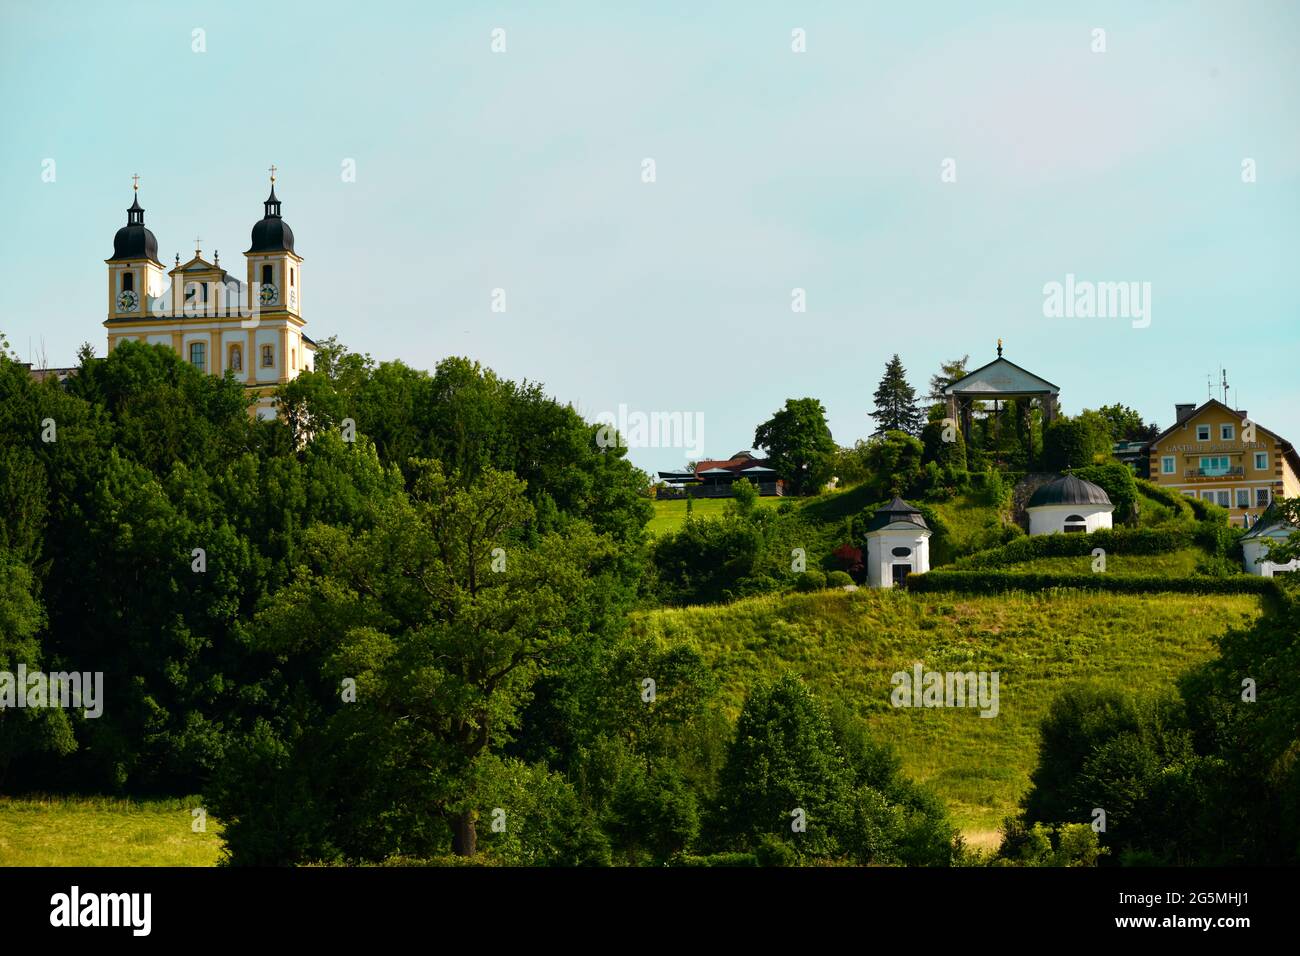 wunderschöne Wallfahrtskirche und hervorragendes Hotel und Gasthaus der Familie Mosshammer in Maria Plain in Salzburg, Österreich Foto de stock